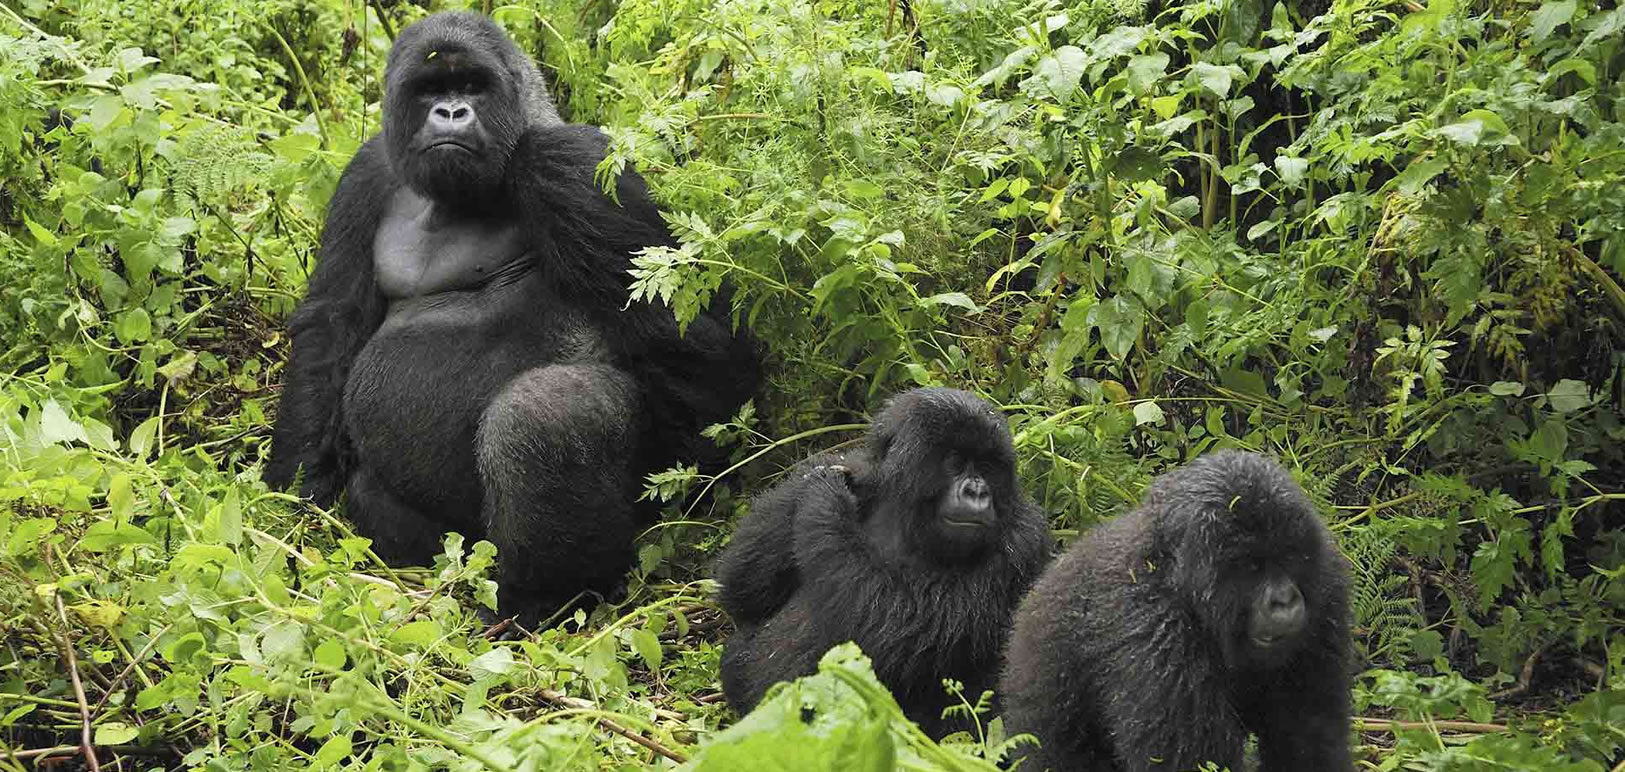 Rwigi Gorilla Family in Bwindi Impenetrable National Park.